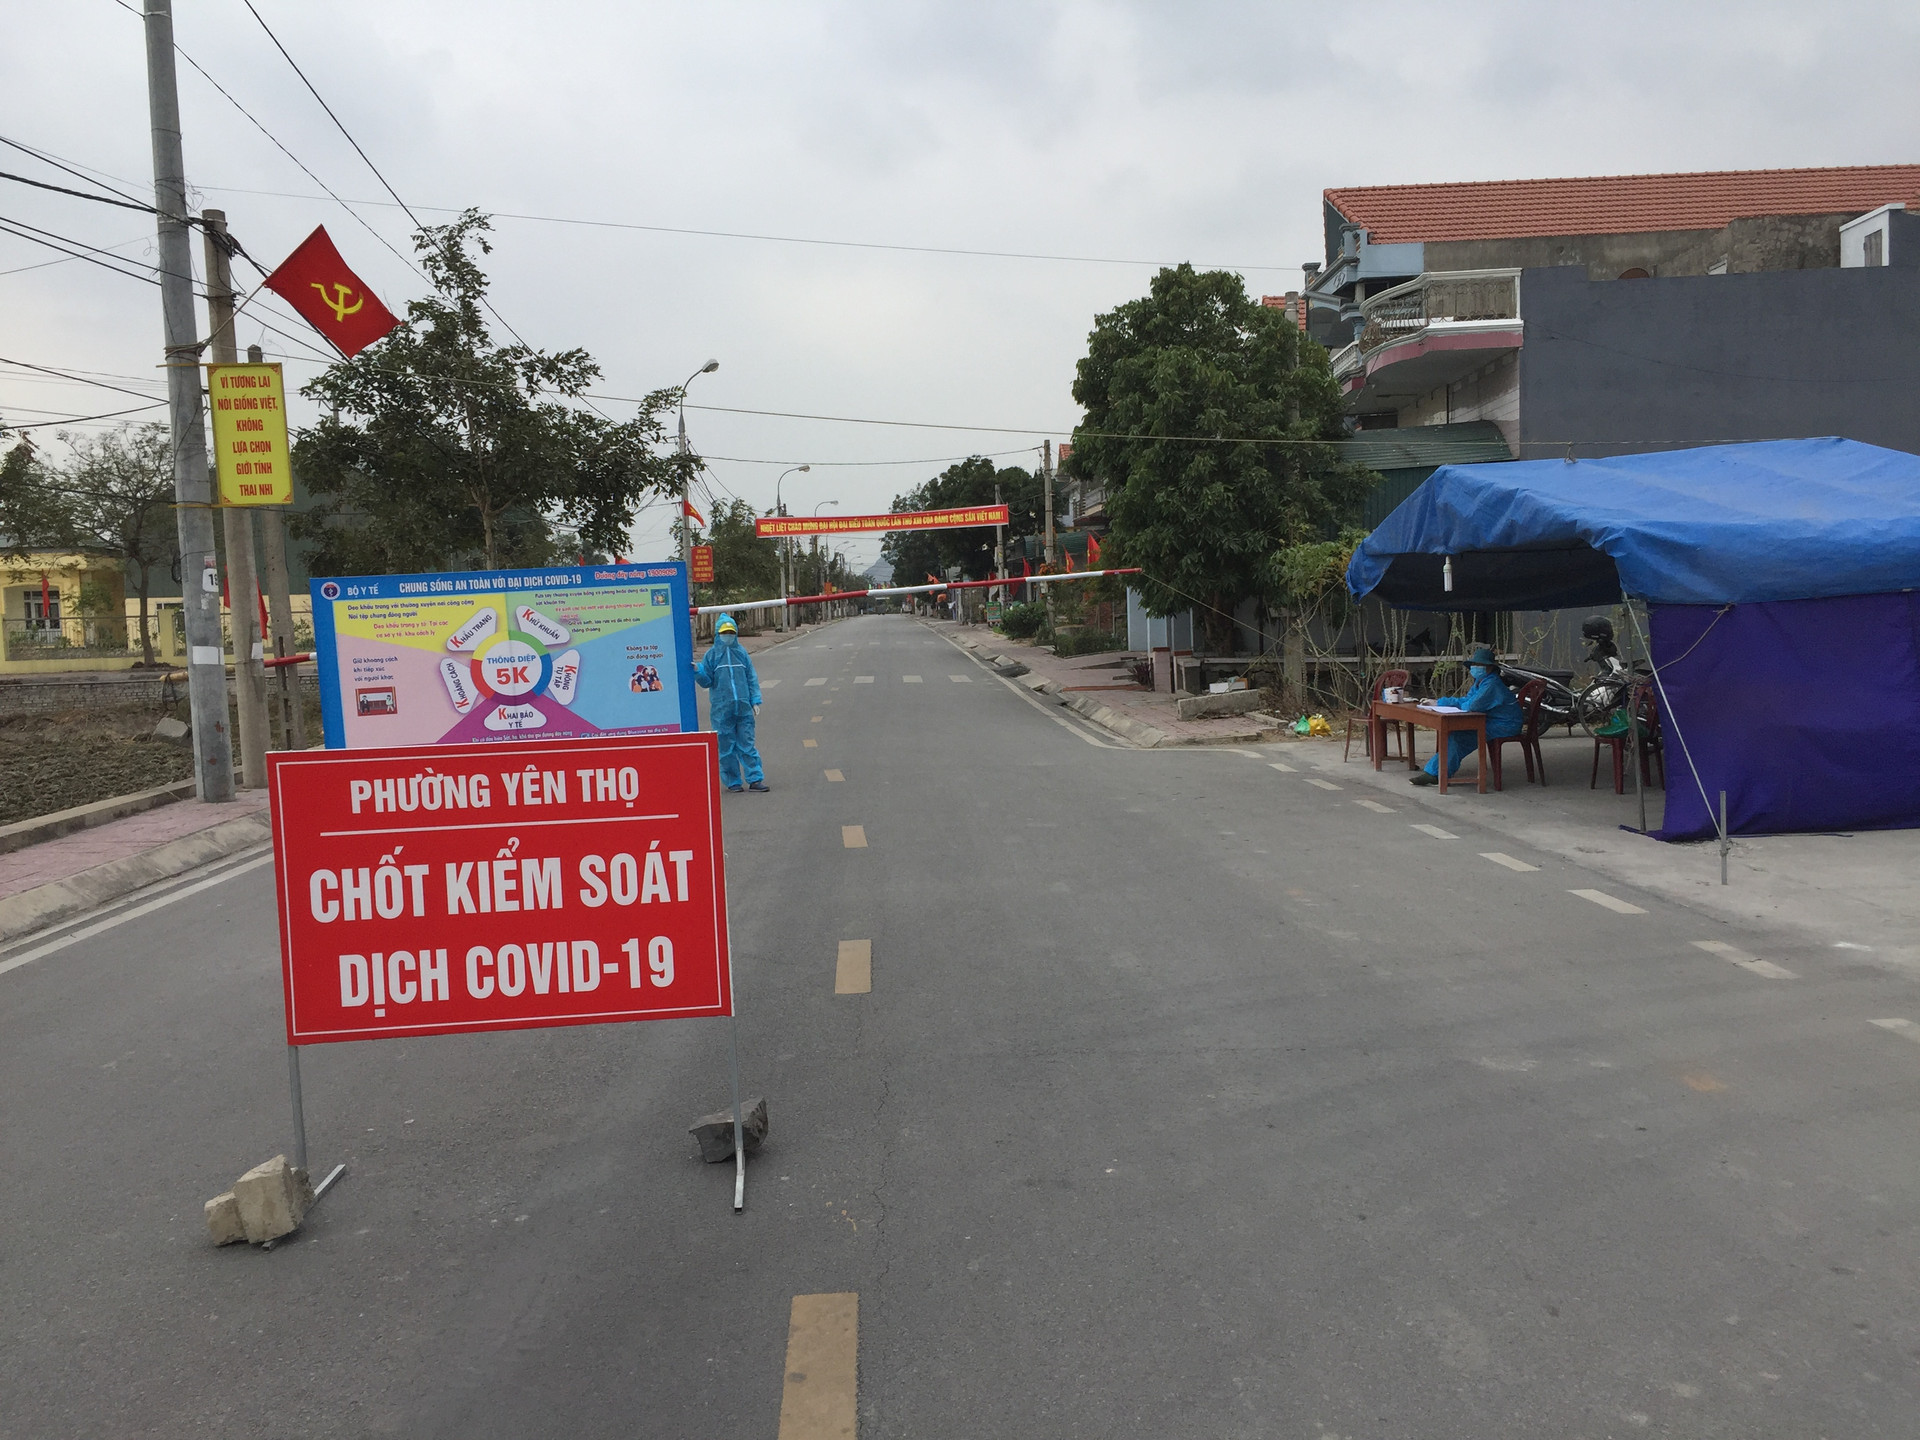 Người trực tại chốt kiểm soát khu Yên Lãng 3, phường Yên Thọ, thị xã Đông Triều (Quảng Ninh) được trang bị quần áo phòng dịch duy trì hoạt động 24/24 giờ đảm bảo an toàn cho nhân dân.